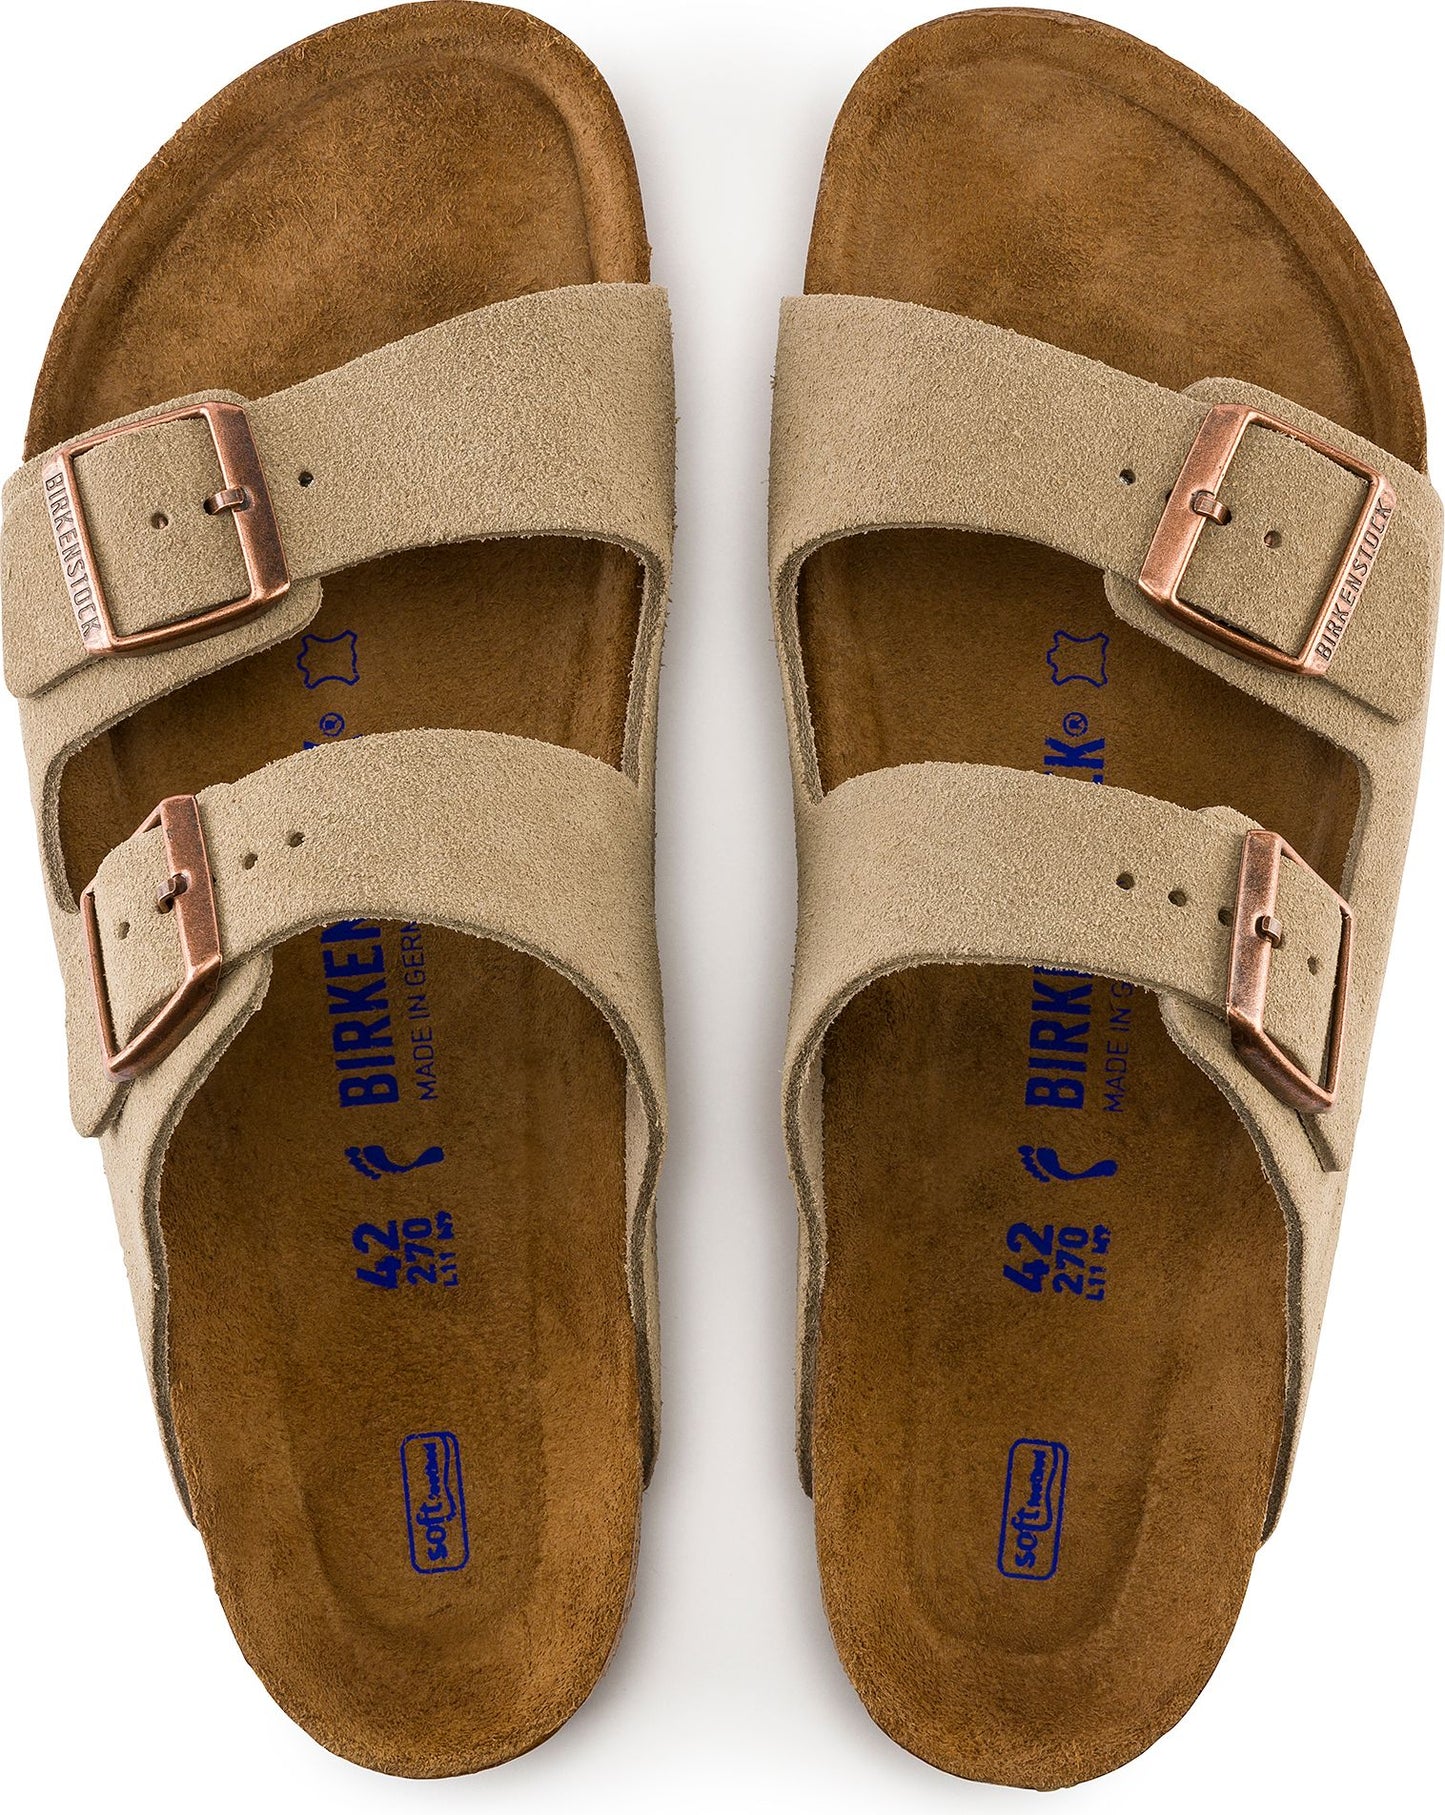 Birkenstock Sandals Arizona Soft Footbed Taupe Suede - Regular